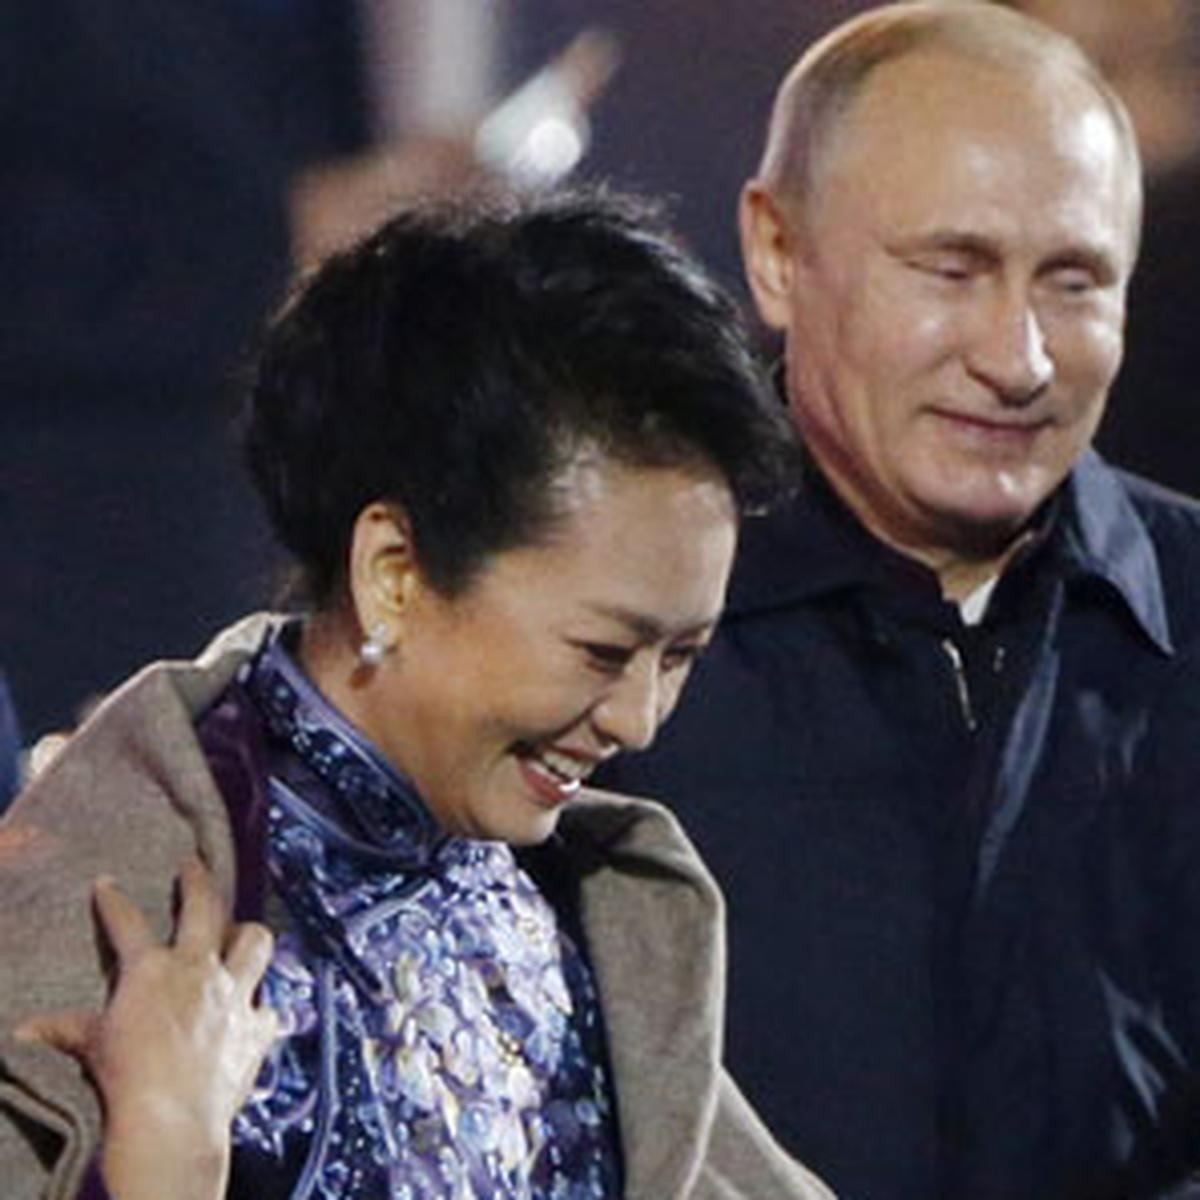 China censura imagens de Putin a oferecer casaco a primeira-dama